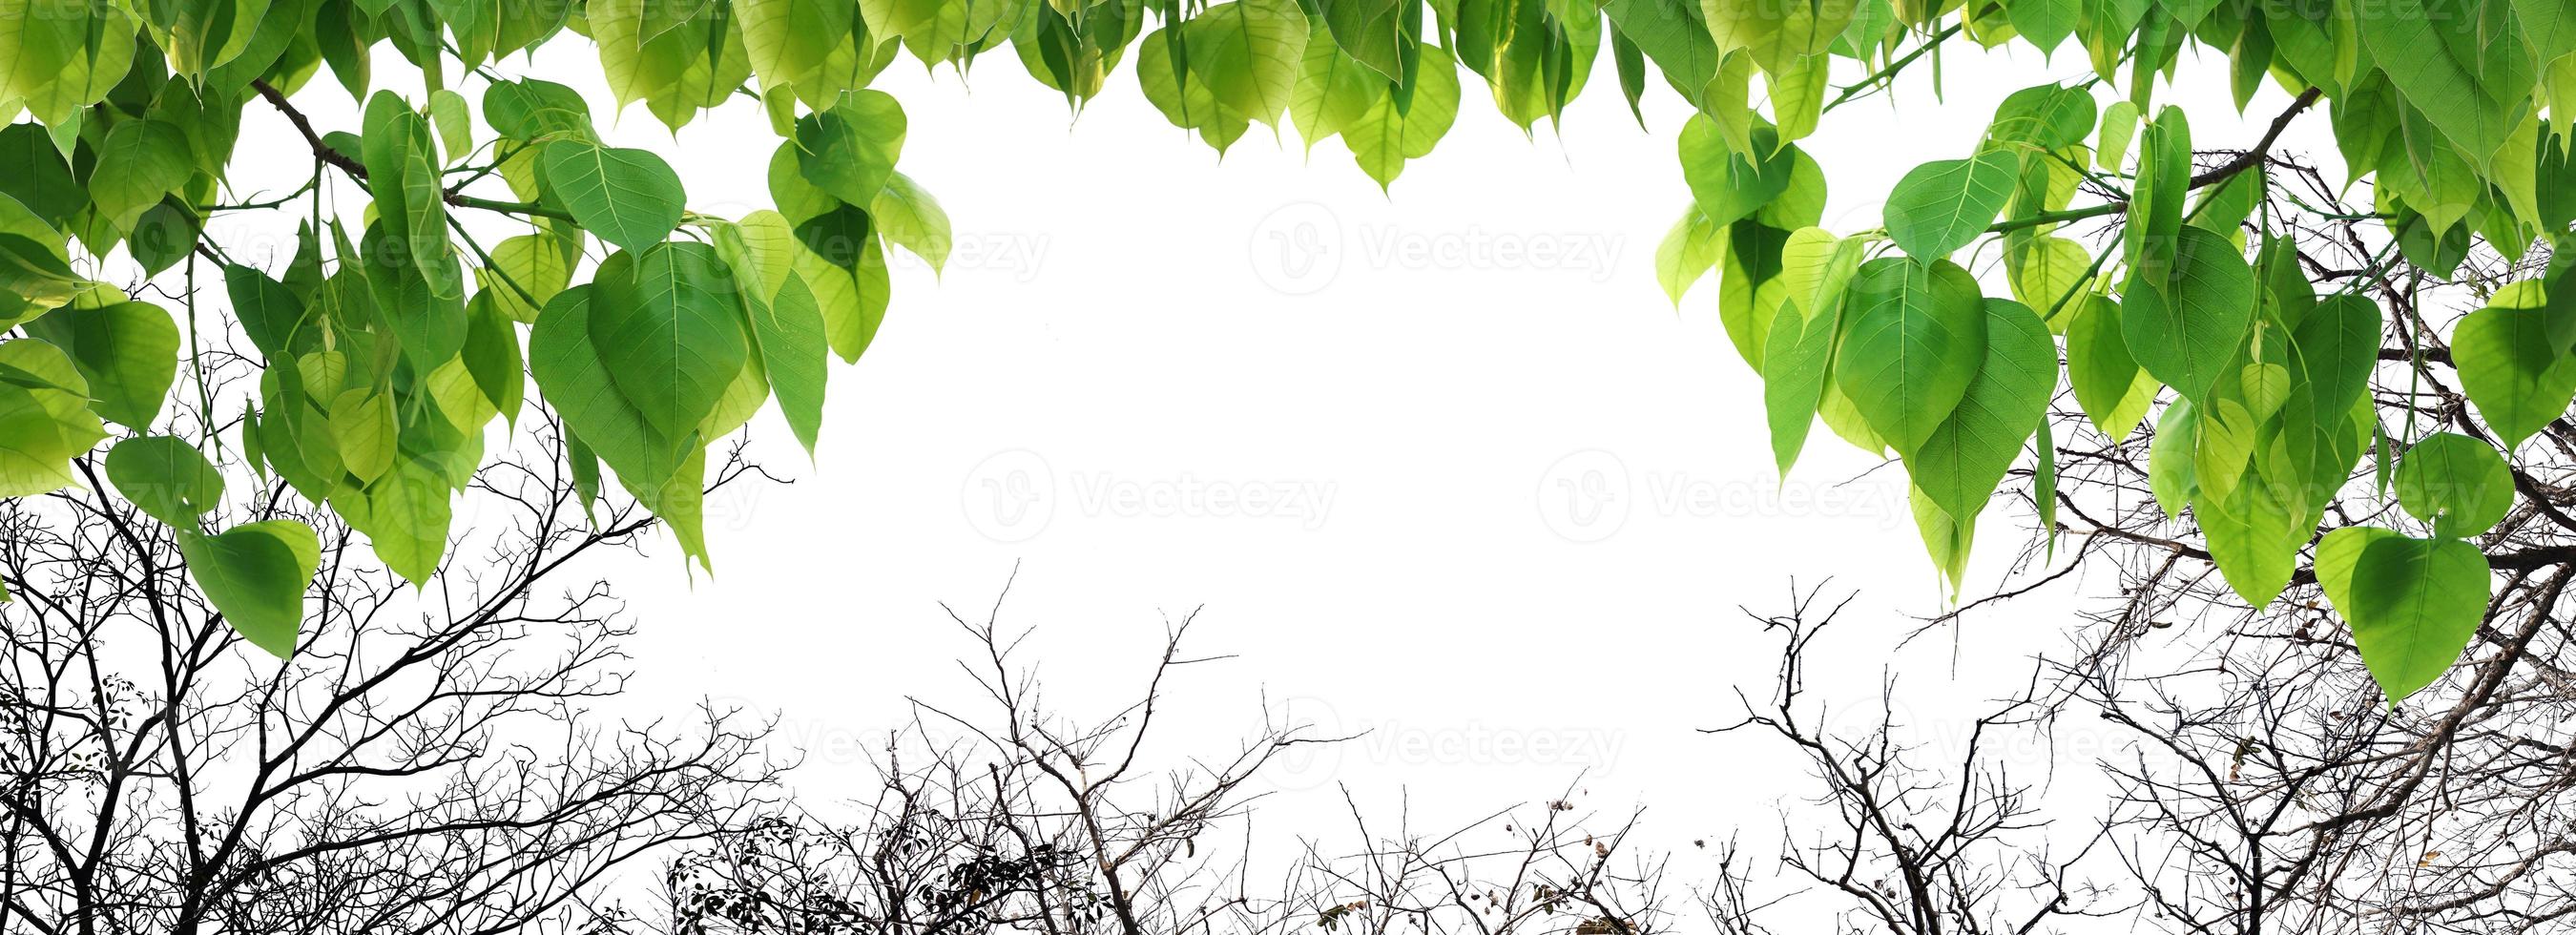 Bodhi grüner Blattbaum isoliert auf weißem Hintergrund. foto